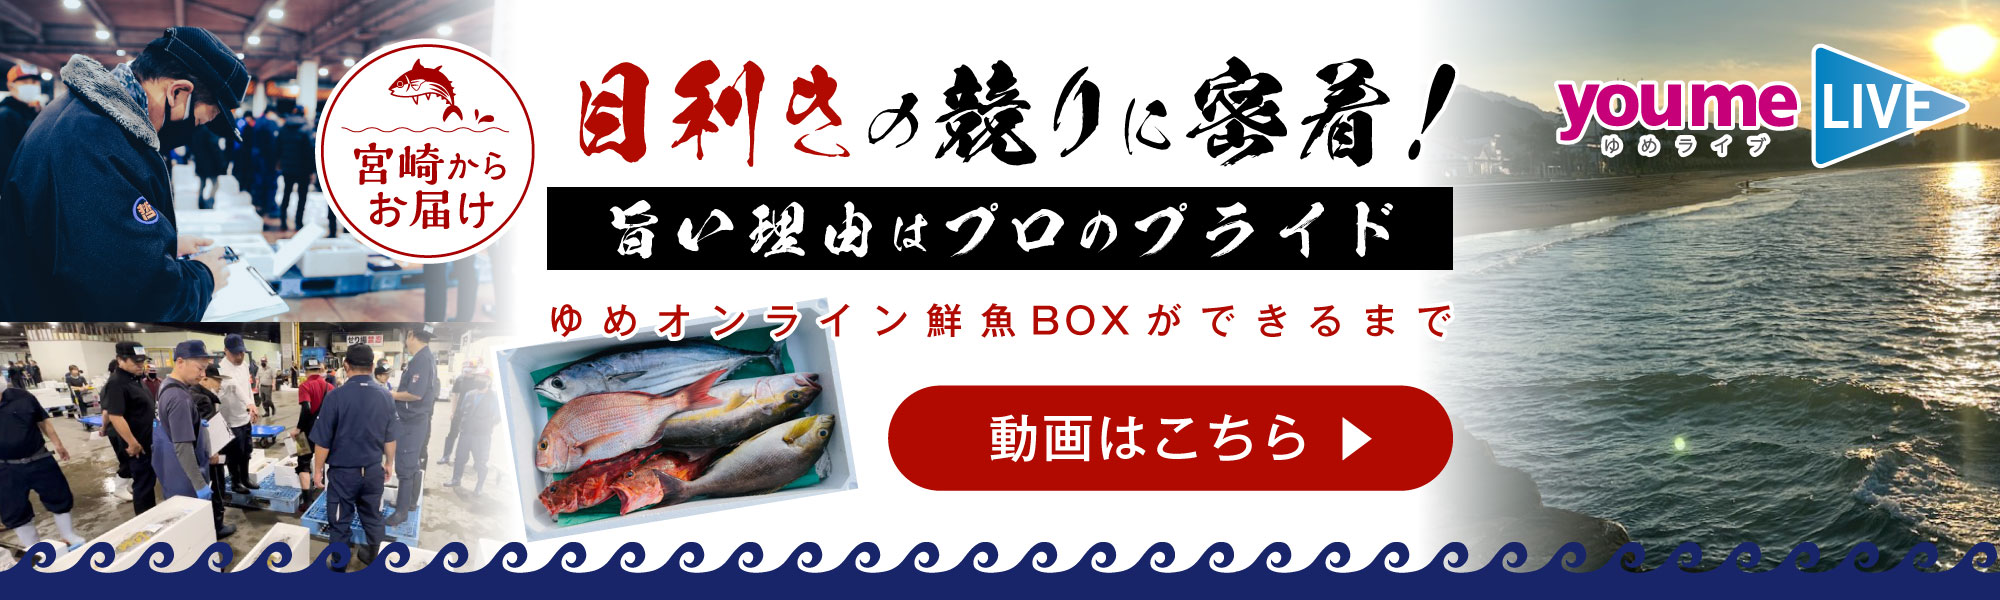 ゆめライブ_鮮魚詰め合わせBOX